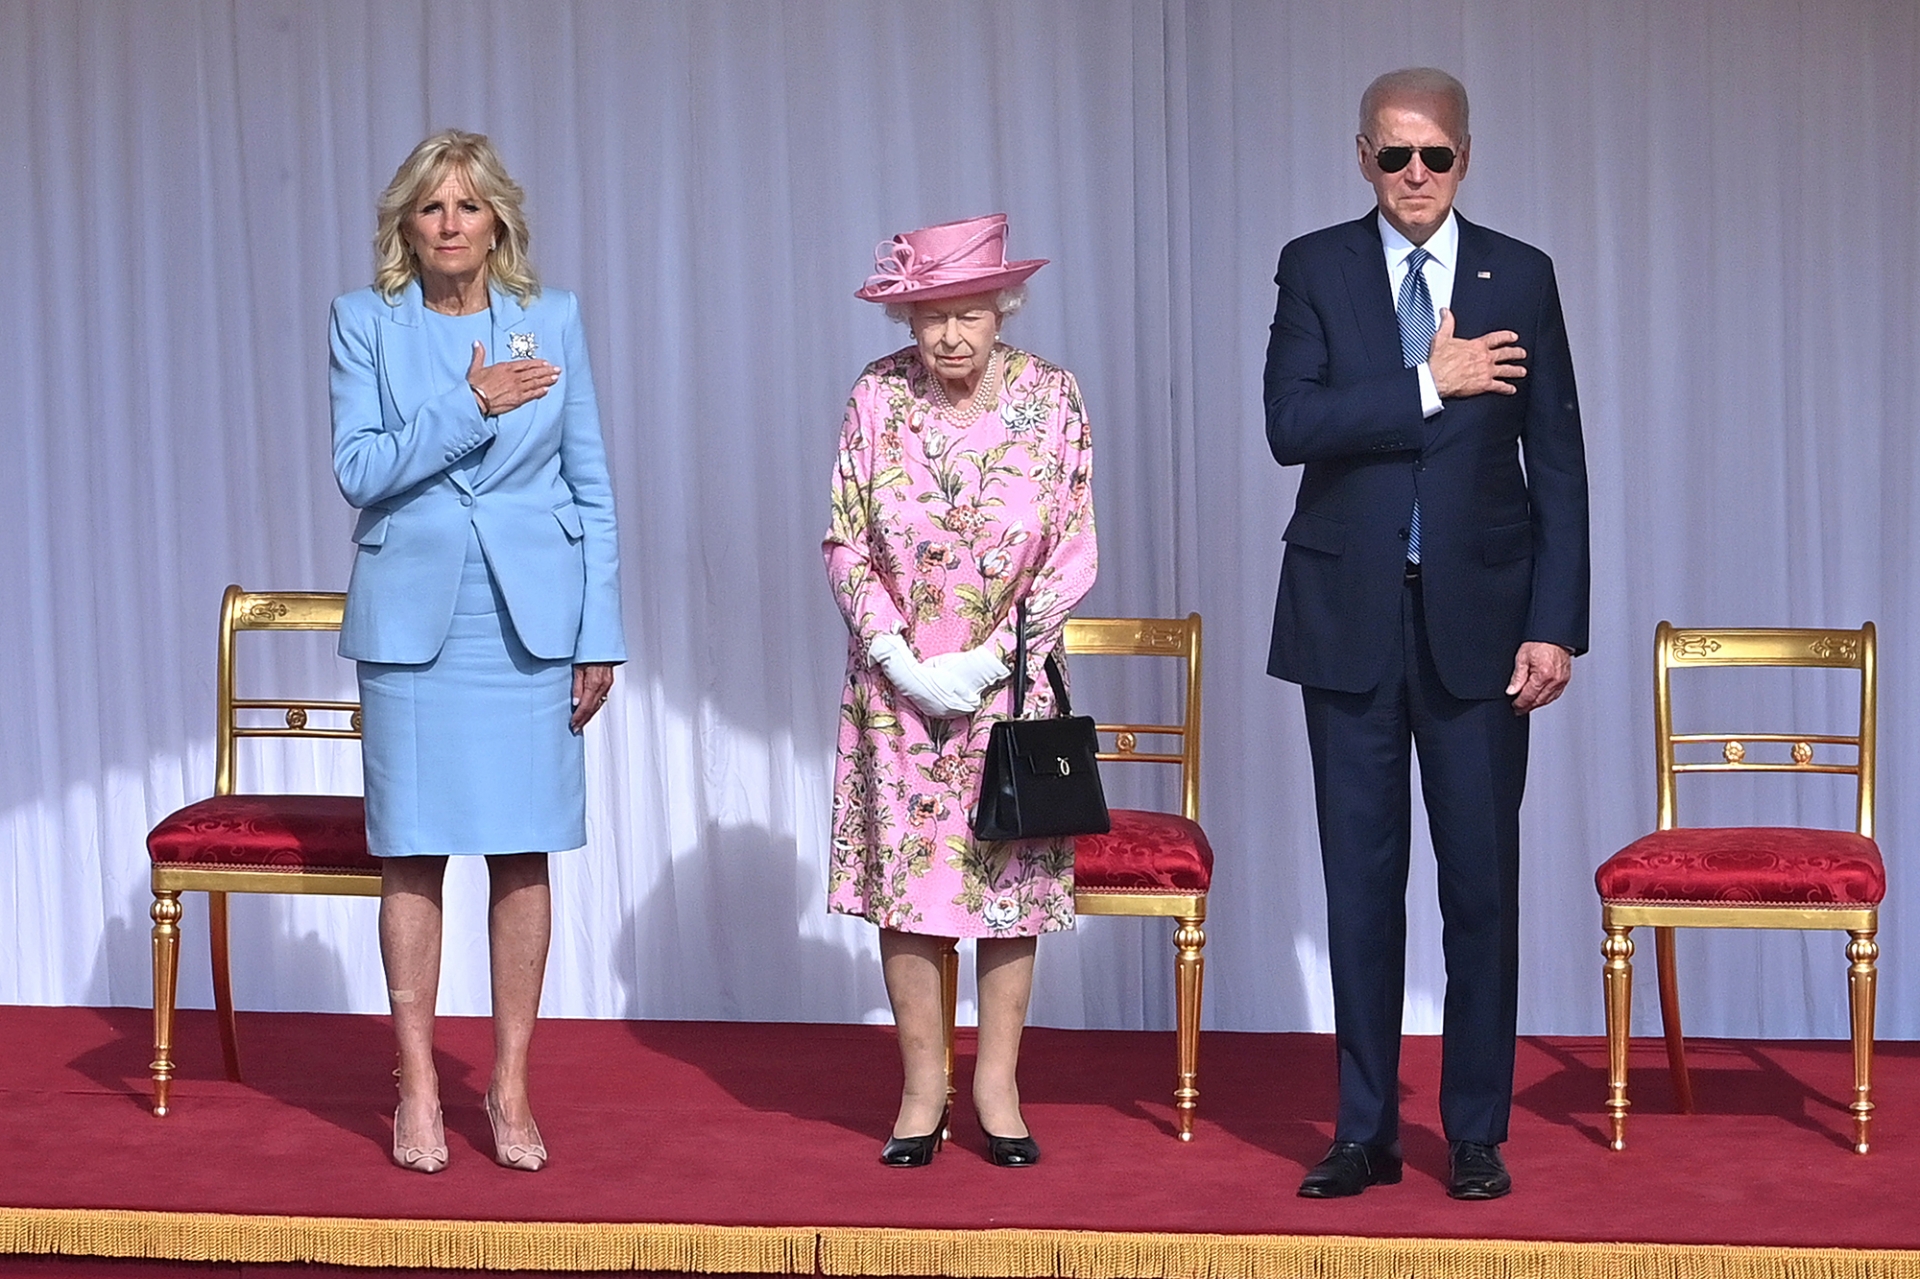 Mới nhất, mặc dù Jill Biden ăn mặc như thể không liên quan đến Nữ hoàng Anh nhưng nếu nhìn kỹ có thể thấy hoạ tiết trên váy Nữ hoàng có sự tương đồng nhất định với váy của bà Jill lẫn cà vạt của Tổng thống Biden.